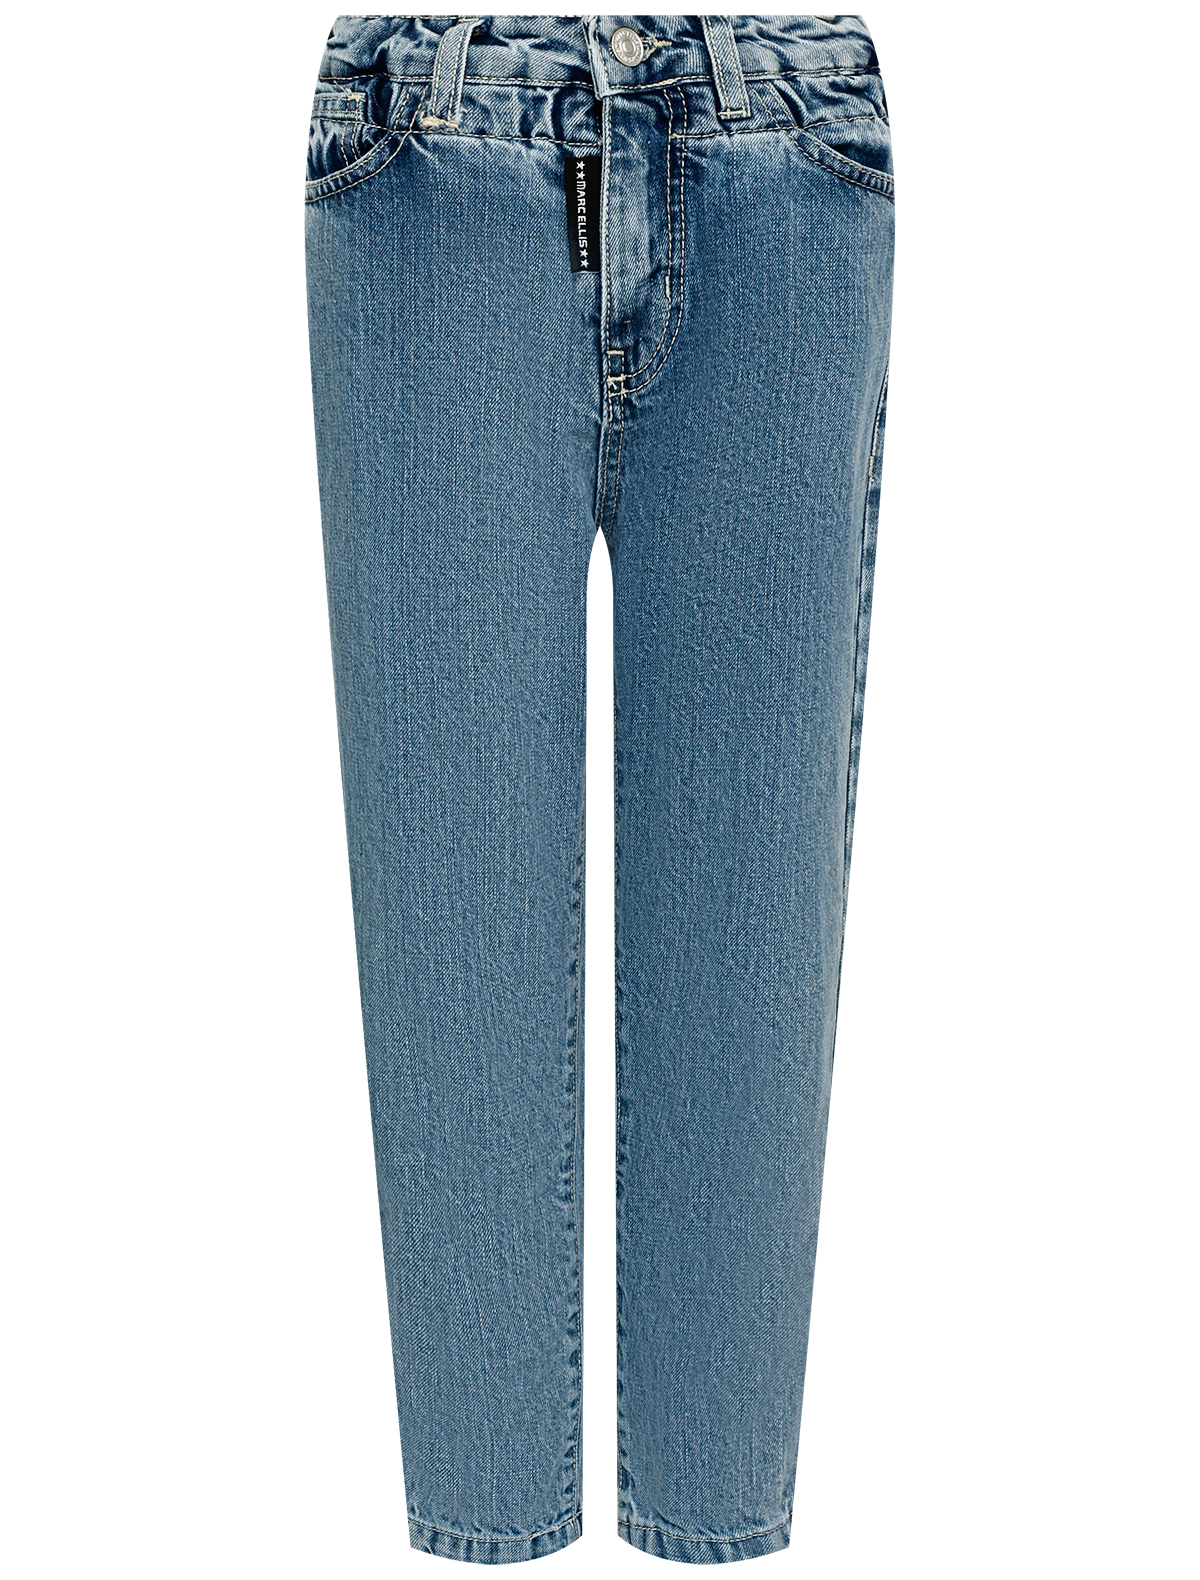 джинсы marc ellis для девочки, голубые